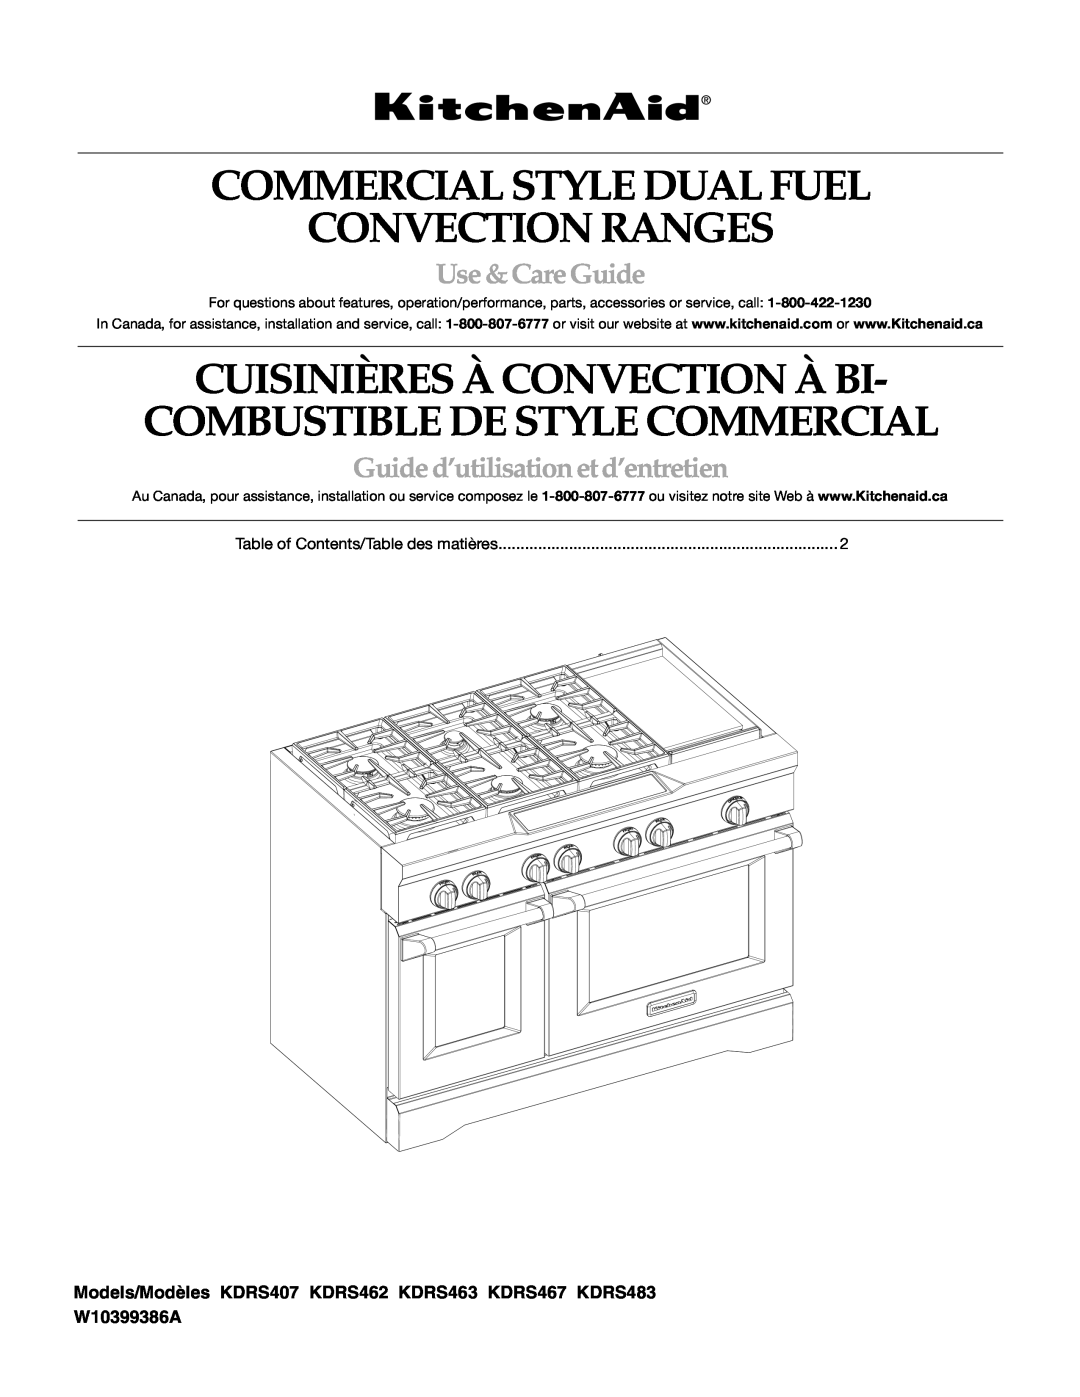 KitchenAid KDRS463, KDRS467, KDRS483, KDRS407, KDRS462 manual Commercial Style Dual Fuel Convection Ranges, Use & Care Guide 